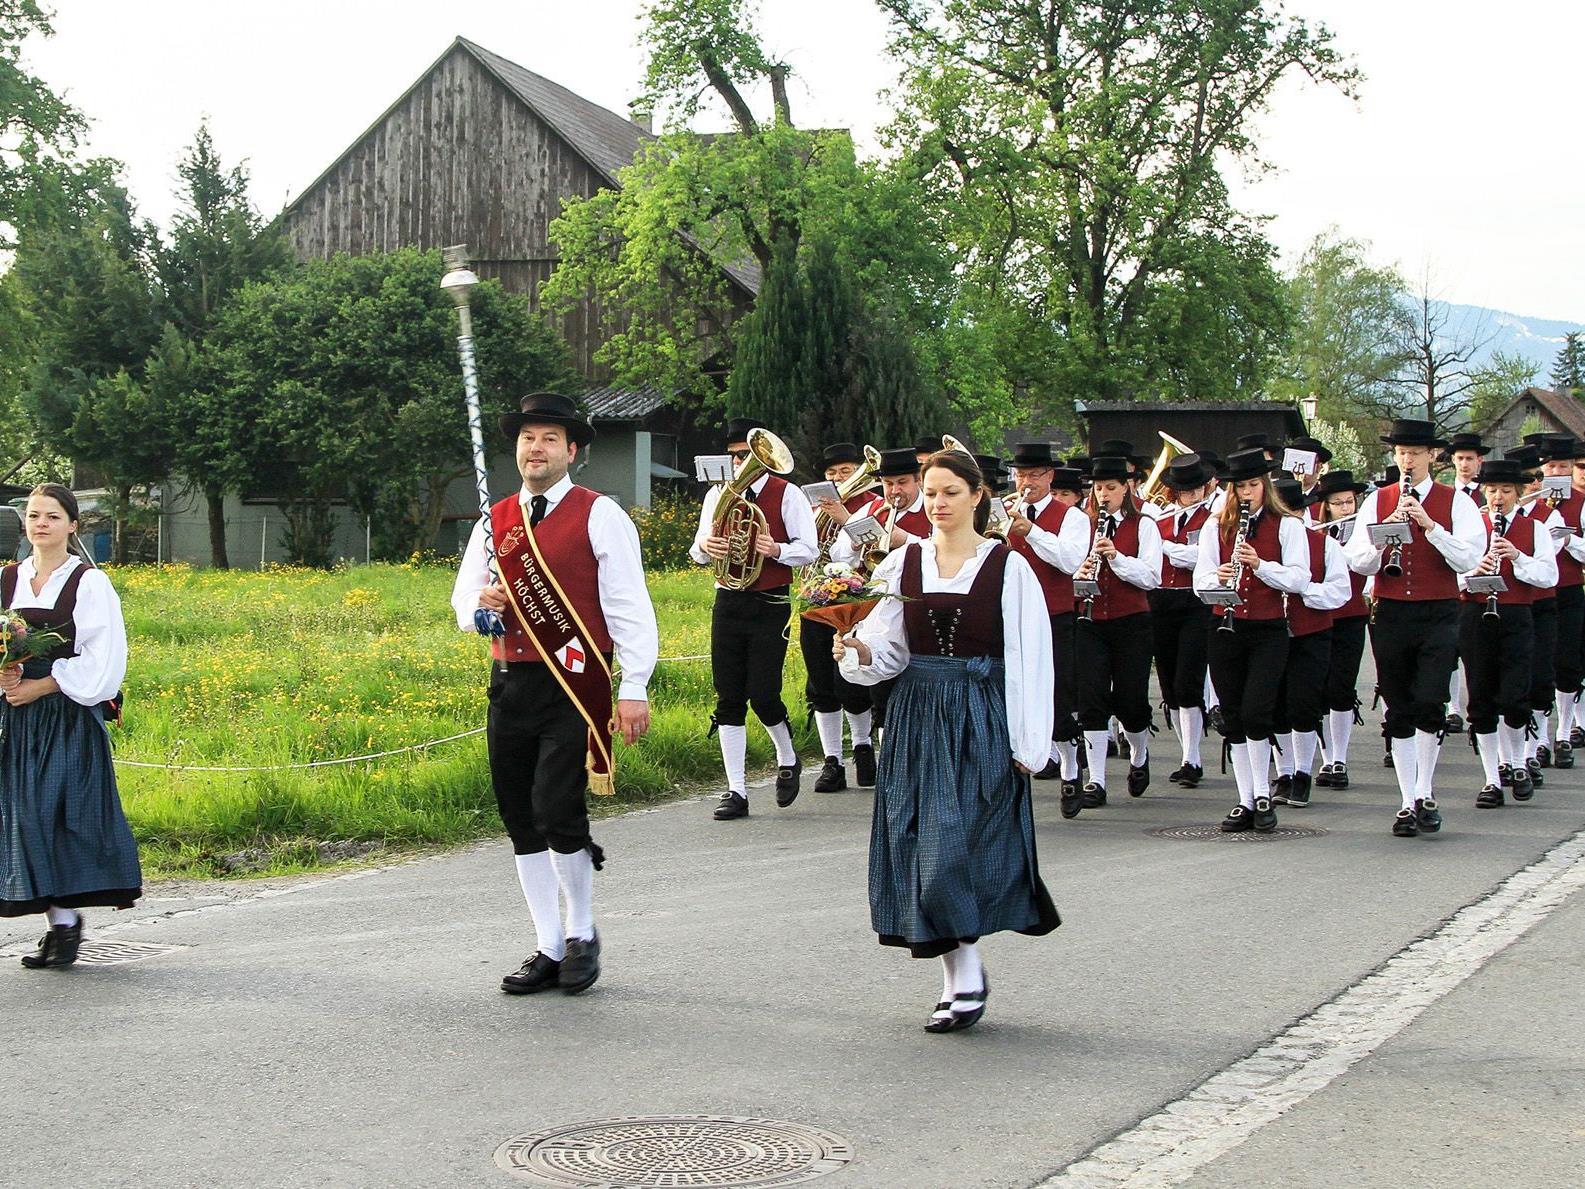 Am Samstag, den 15. September, lädt die Bürgermusik Höchst zum Rheindelta-Musikfest ein